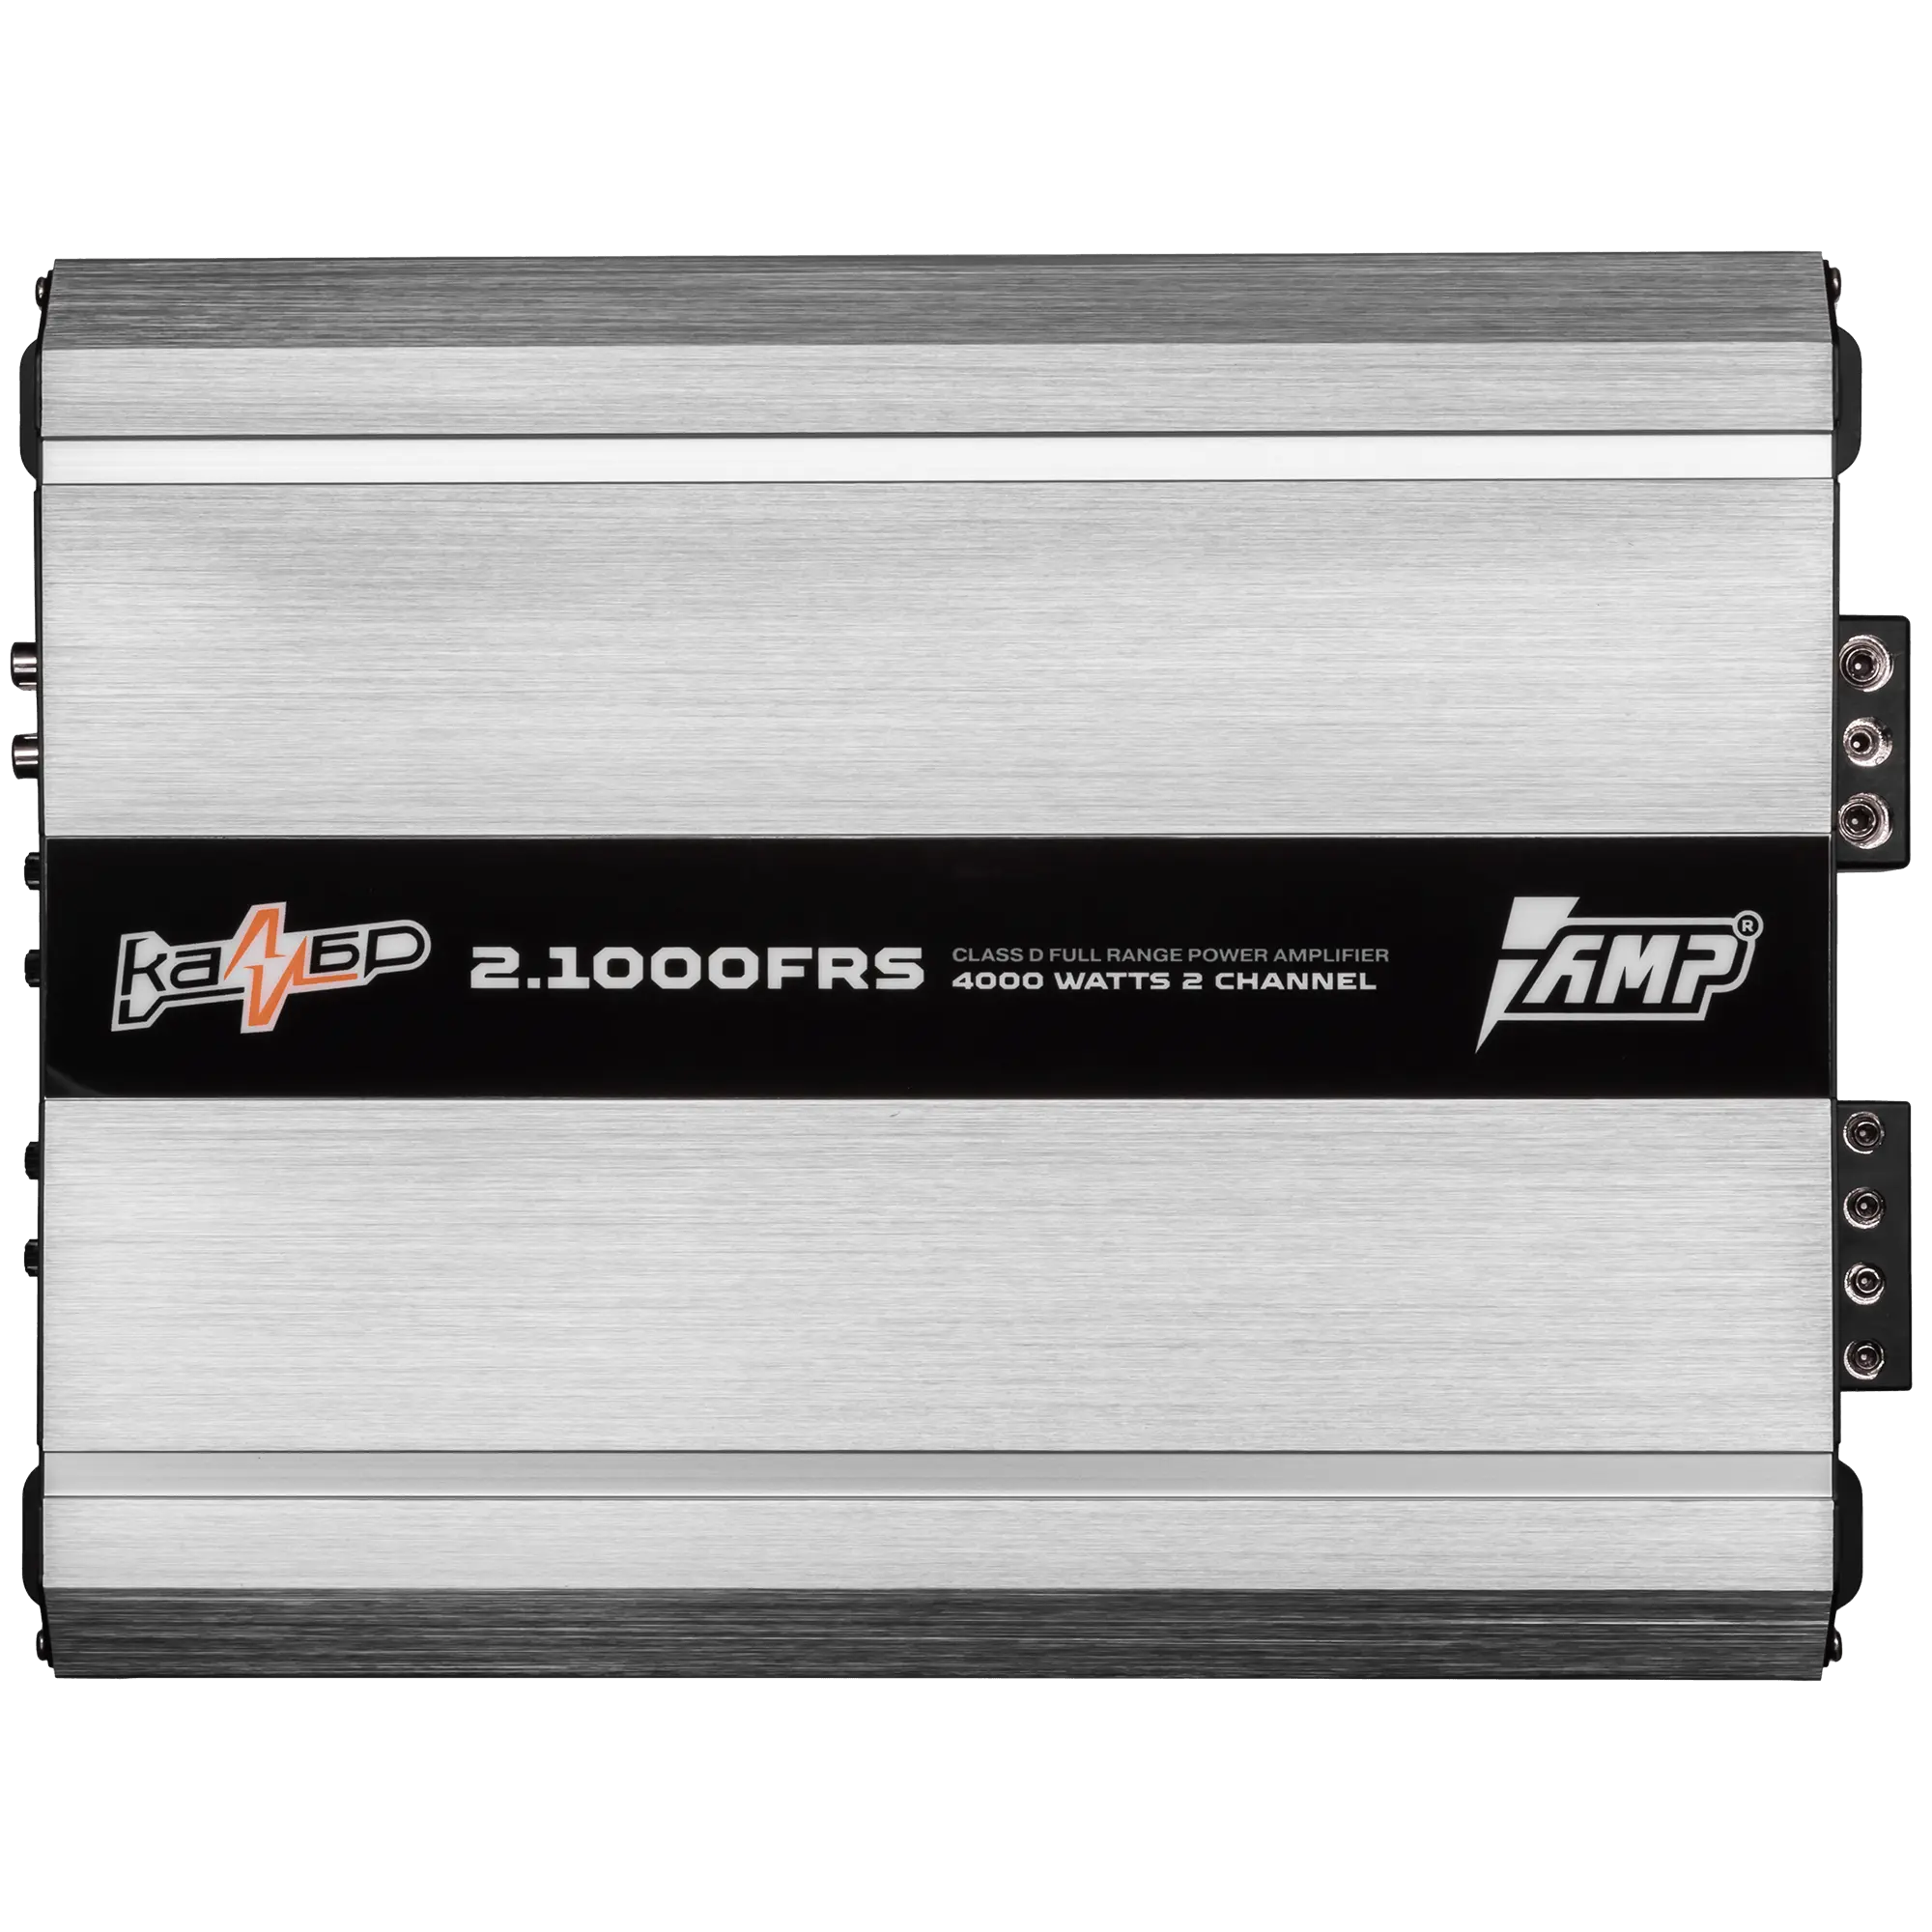 Усилитель AMP Калибр 2.1000FRS купить в интернет магазине AMPGROUP.  Усилитель AMP Калибр 2.1000FRS   цены, большой каталог, новинки.
